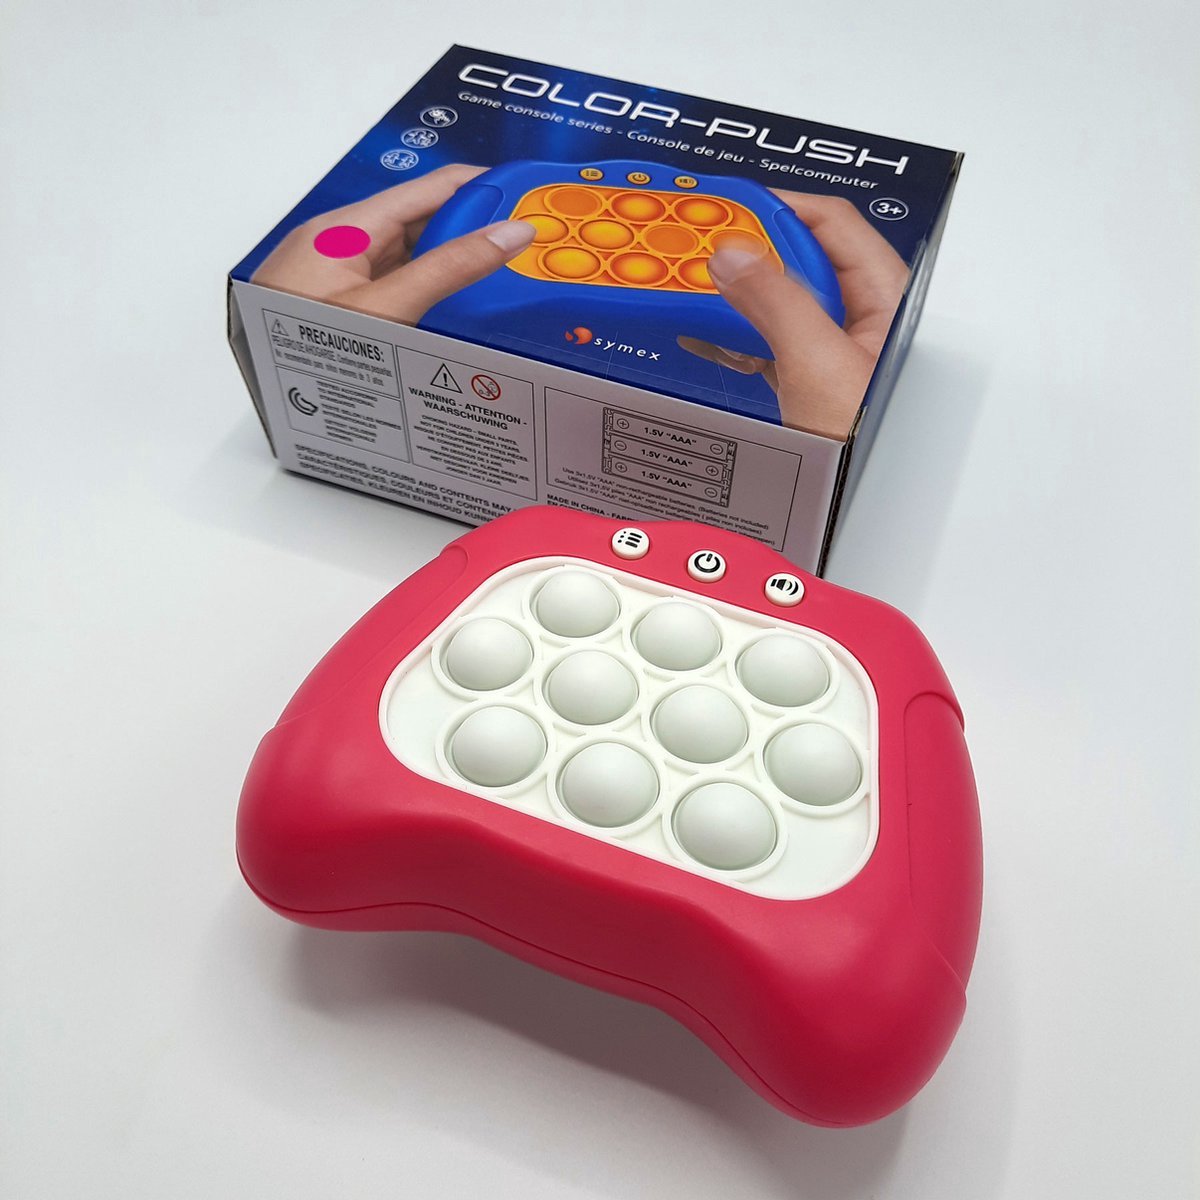 Console de jeu éducatif pour la petite enfance, Pop It Fidget jouet